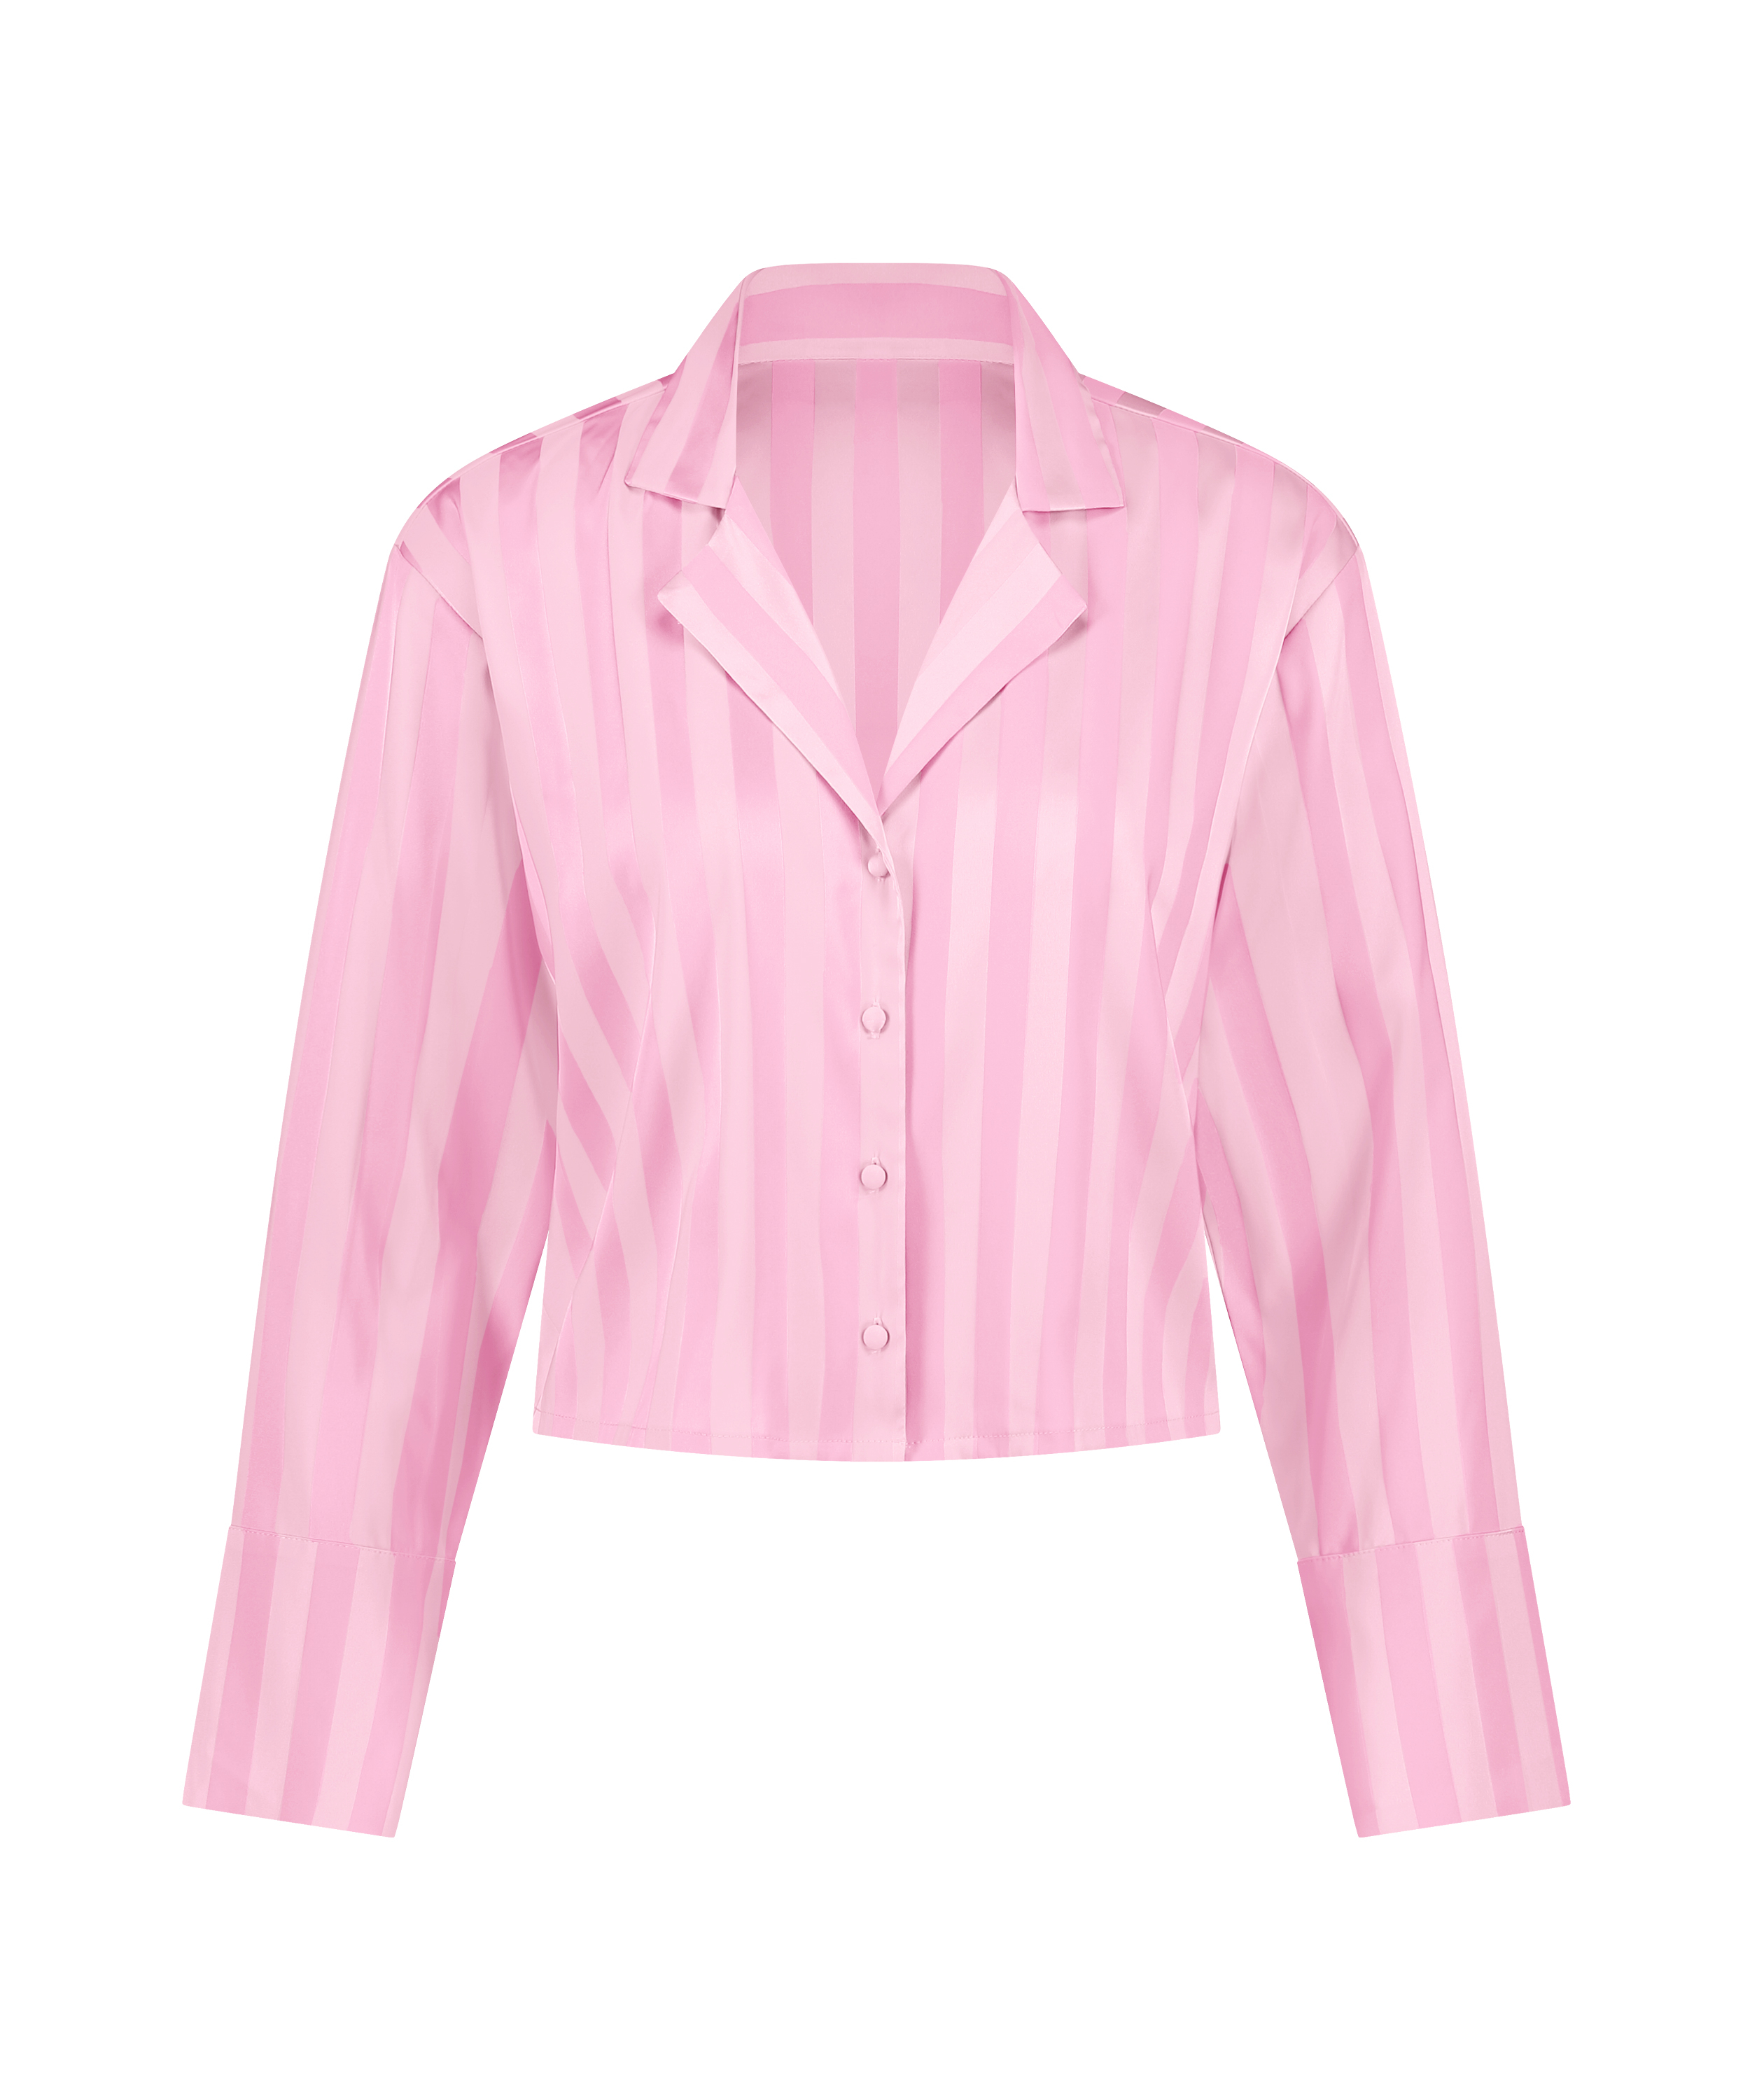 Satin Long-Sleeved Jacket, Pink, main